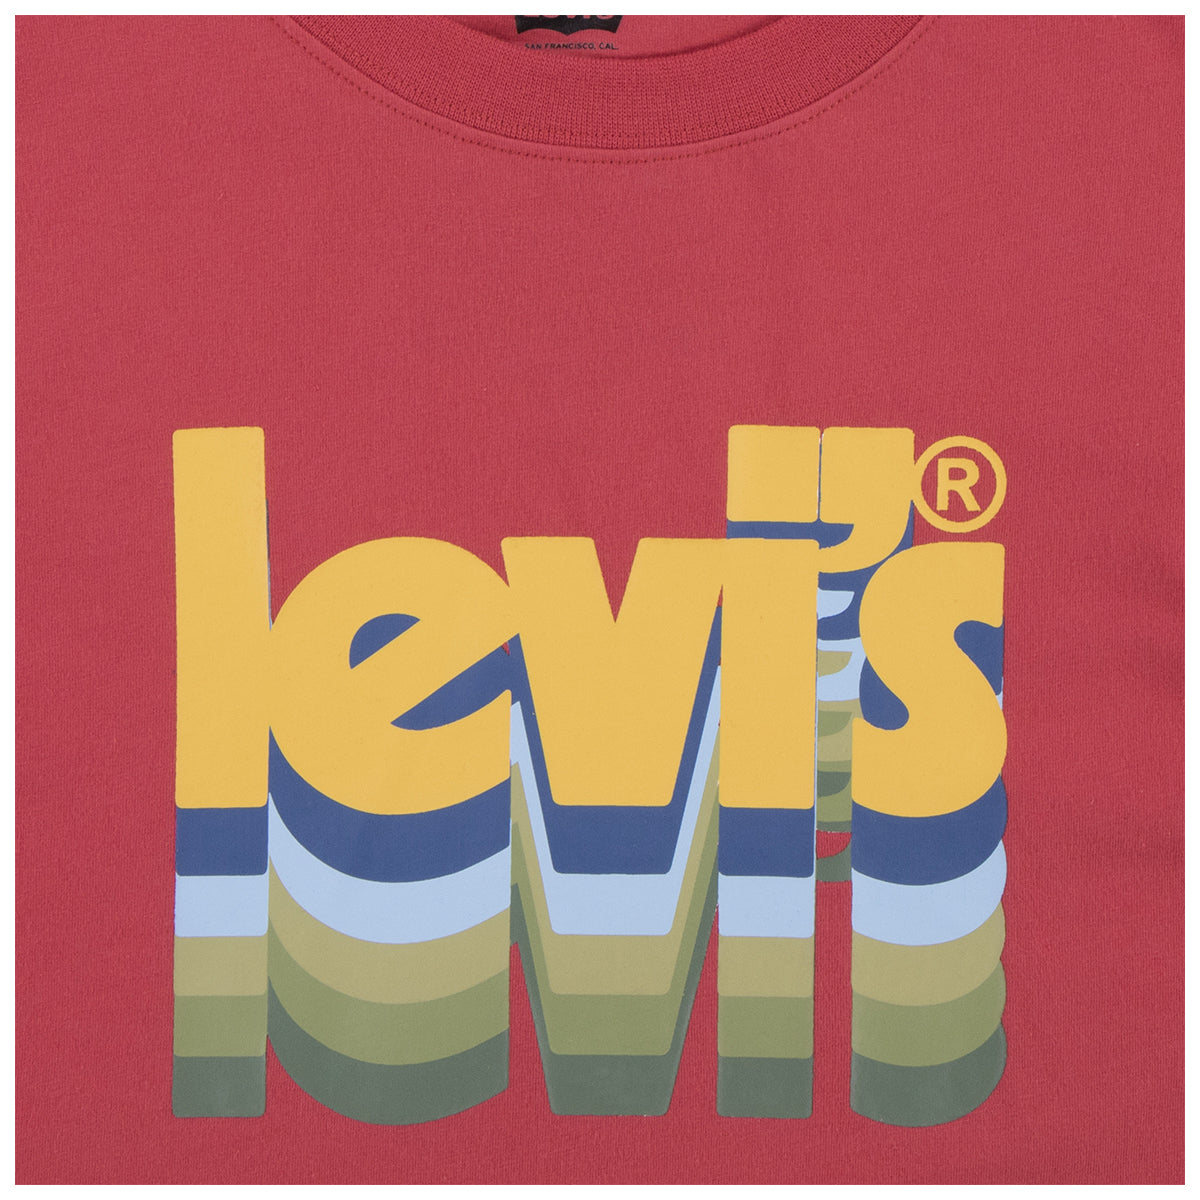 חולצת טי שרט LEVI'S לוגו וינטג' לילדים